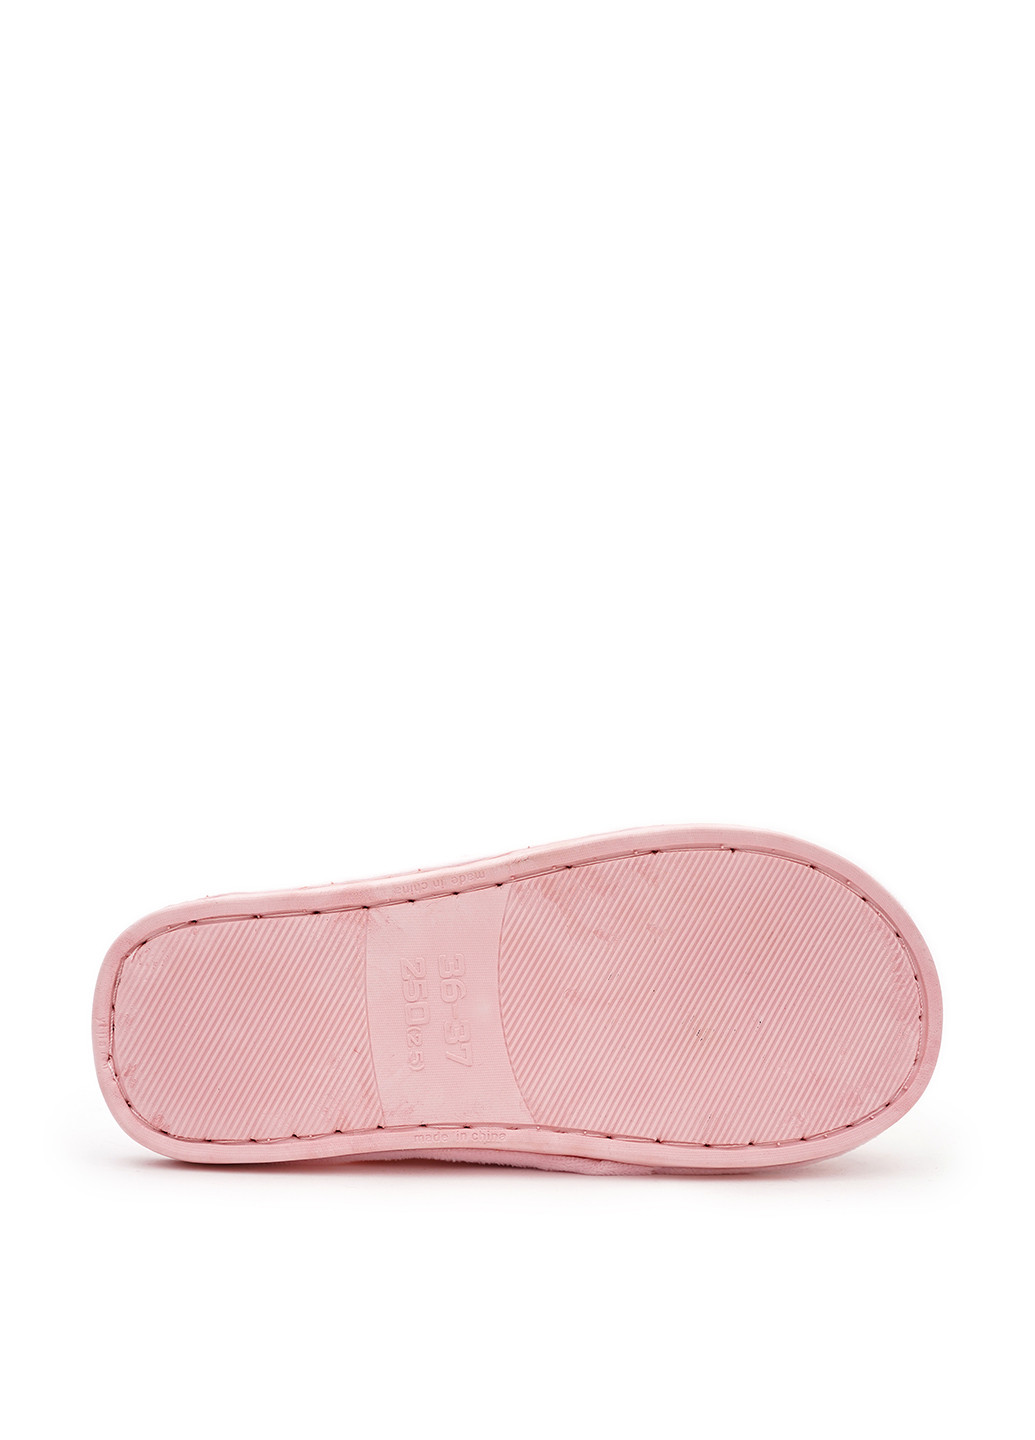 Розовые тапочки Slippers с мехом